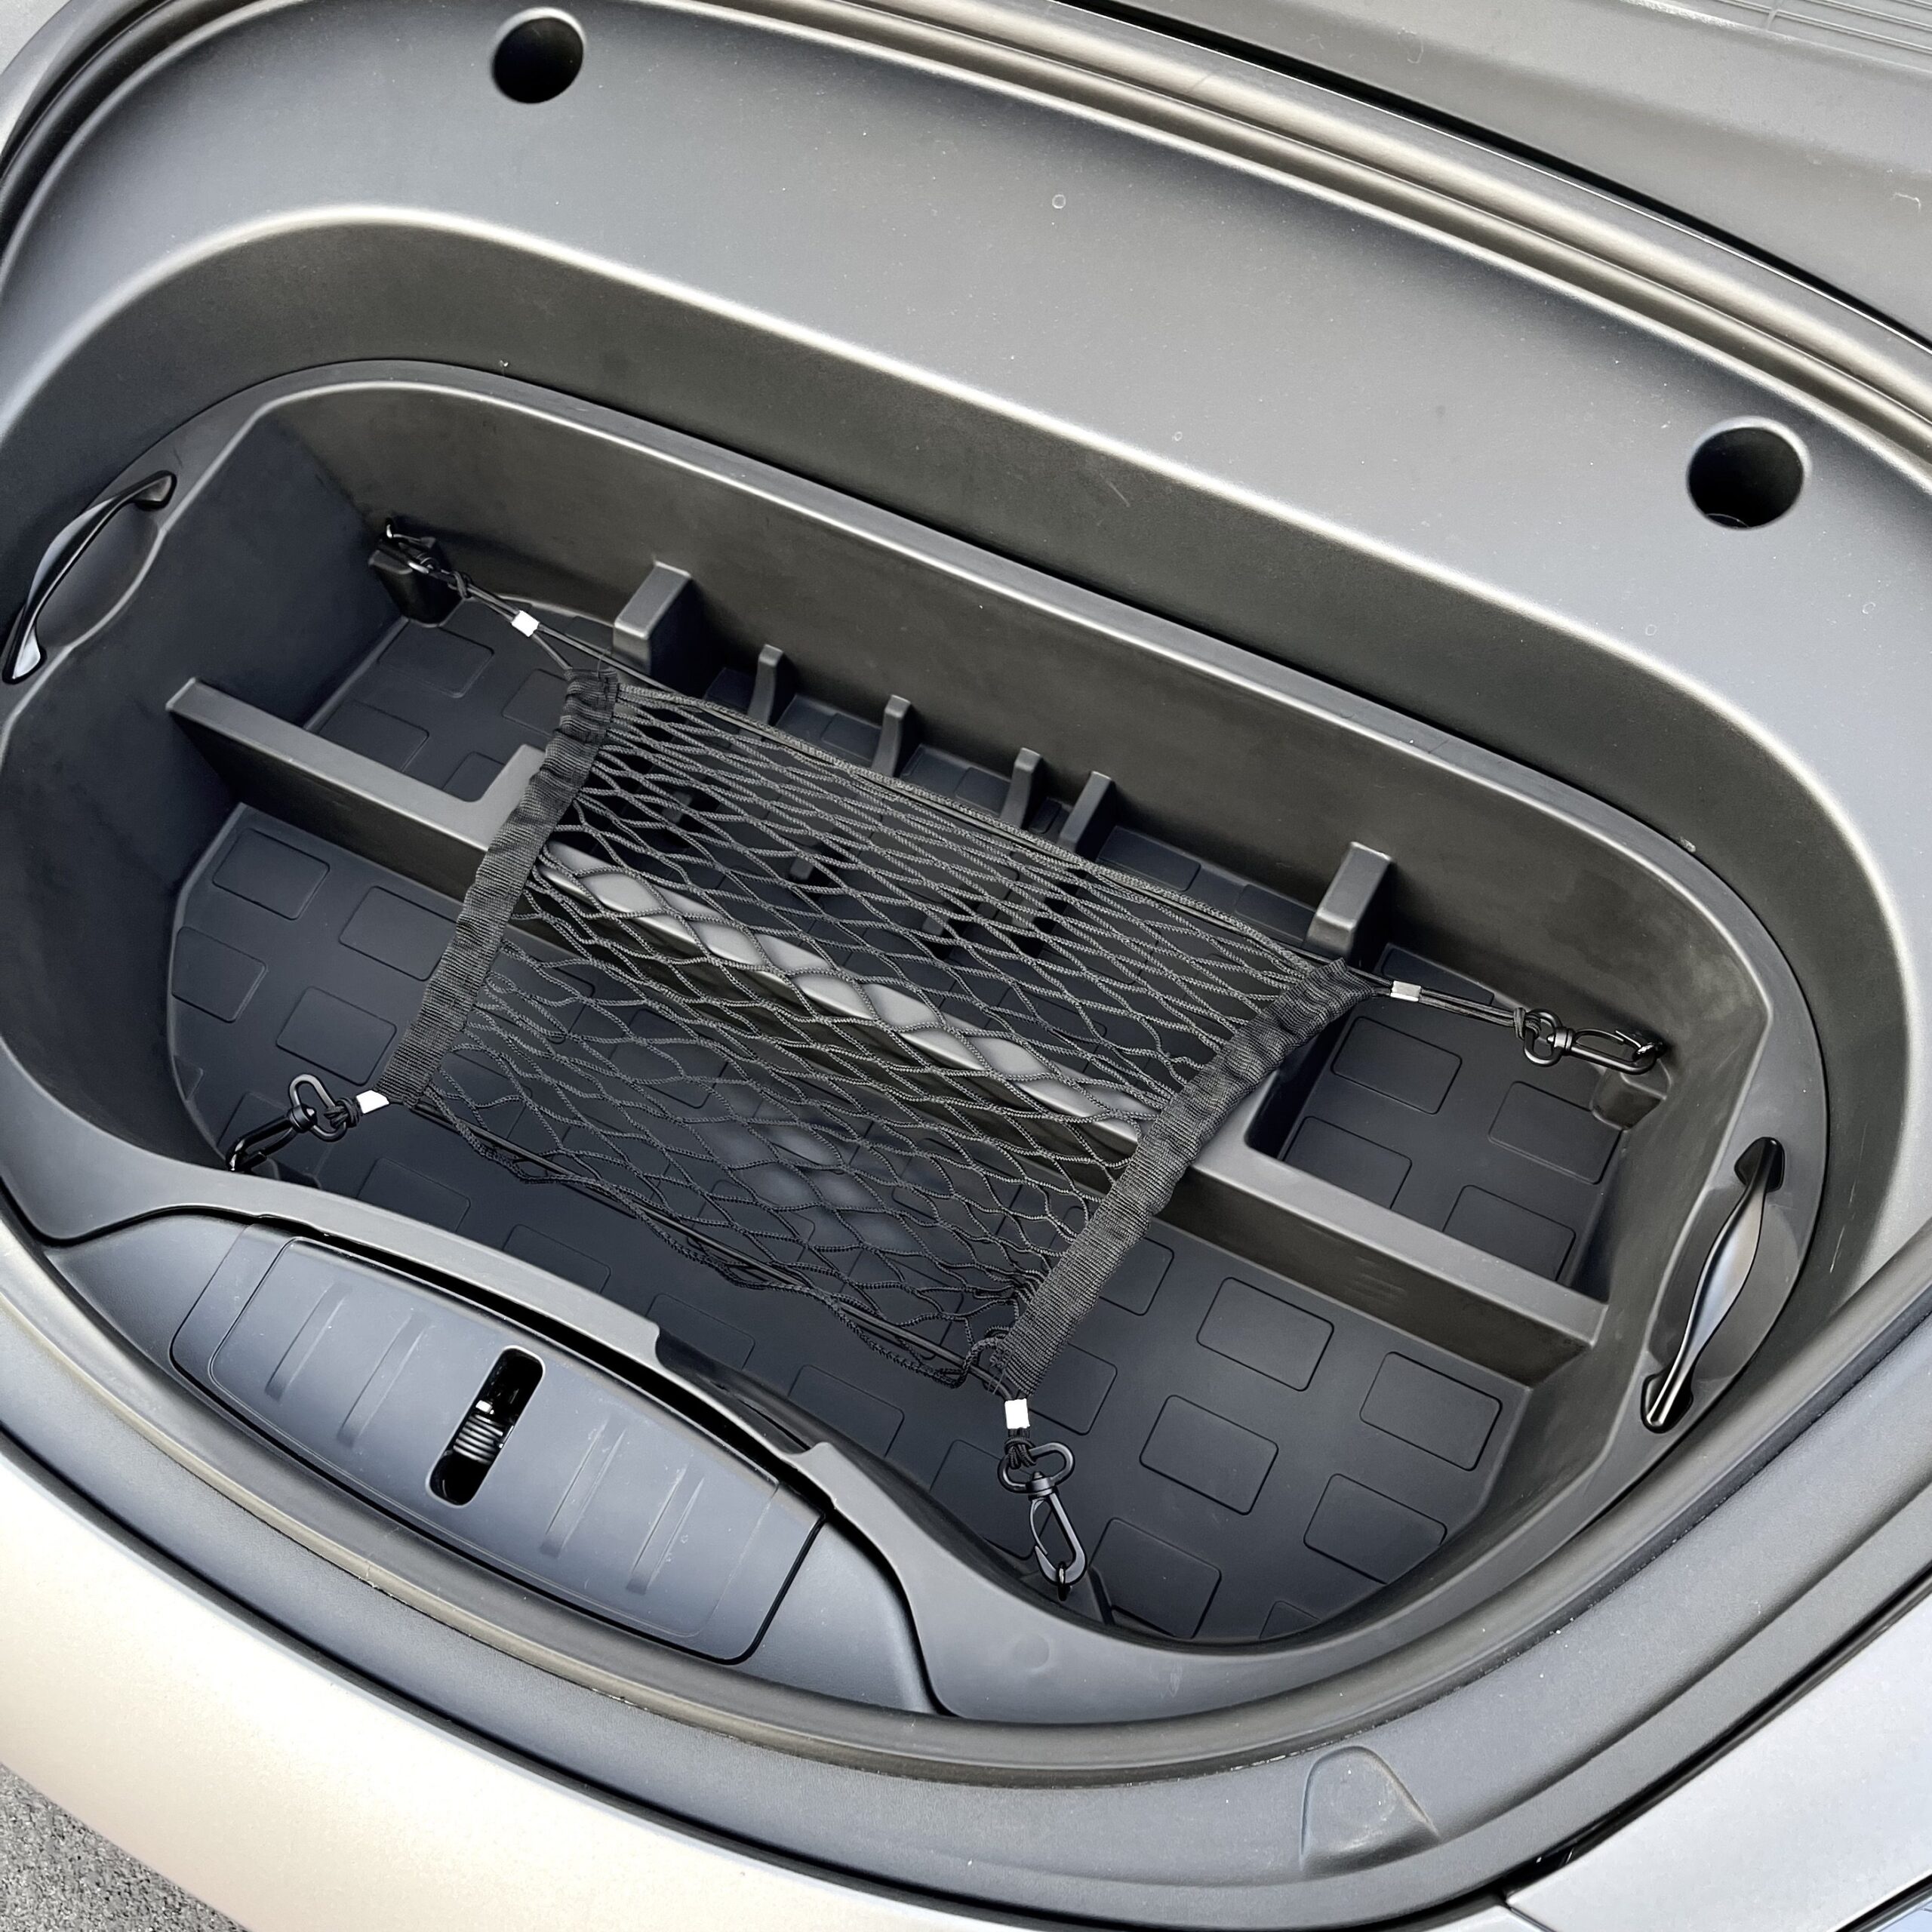 Kofferraum Netz 50x25cm universal - Forcar Concepts - Tesla Zubehör